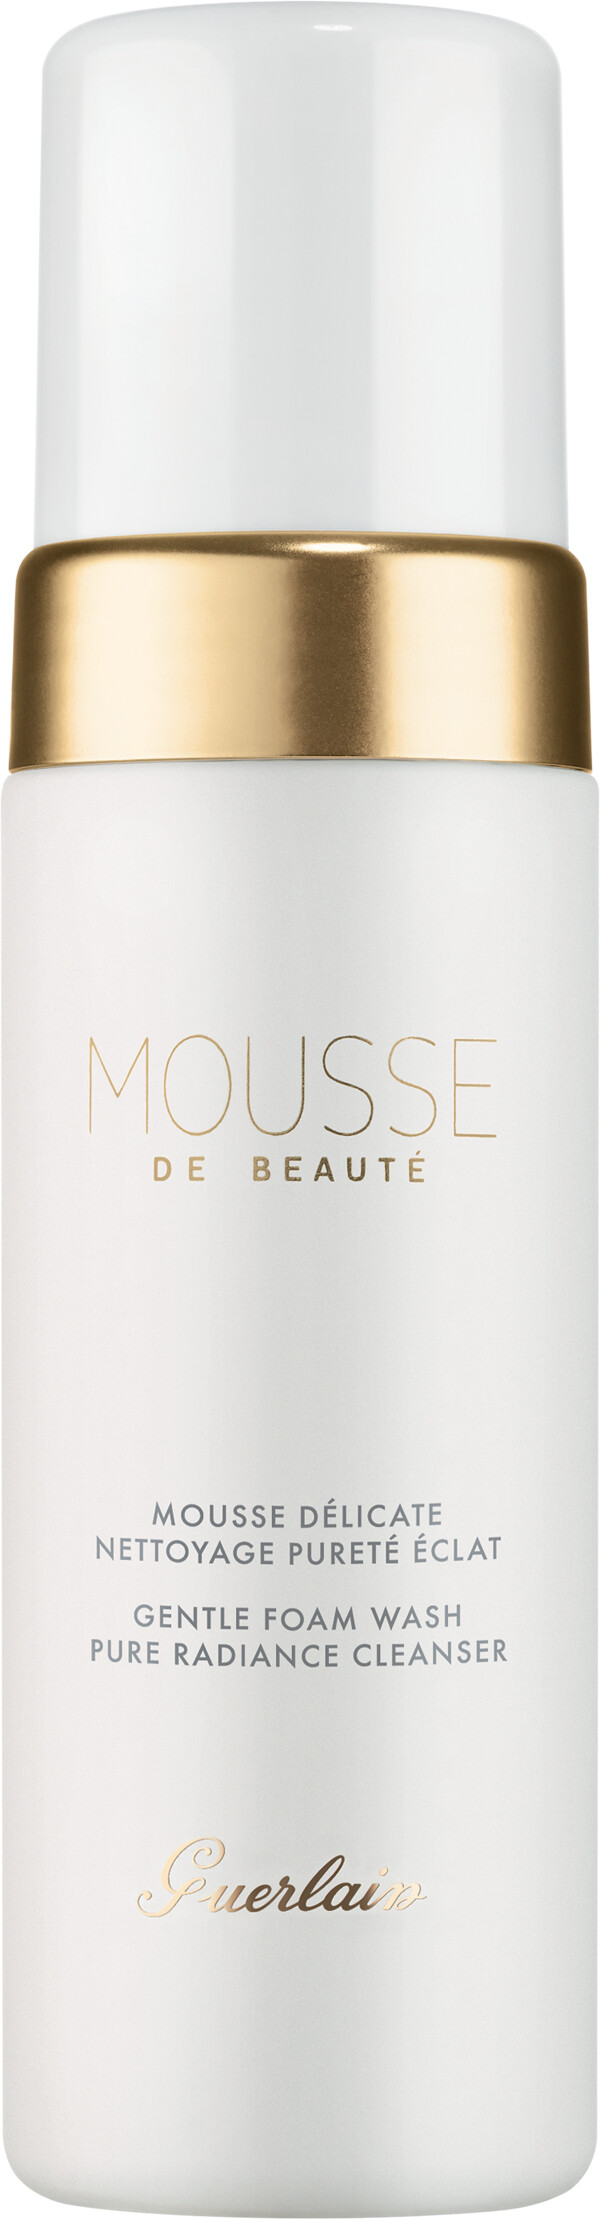 GUERLAIN Mousse de Beaute - Gentle Foam Wash - Pure Radiance Cleanser 150ml